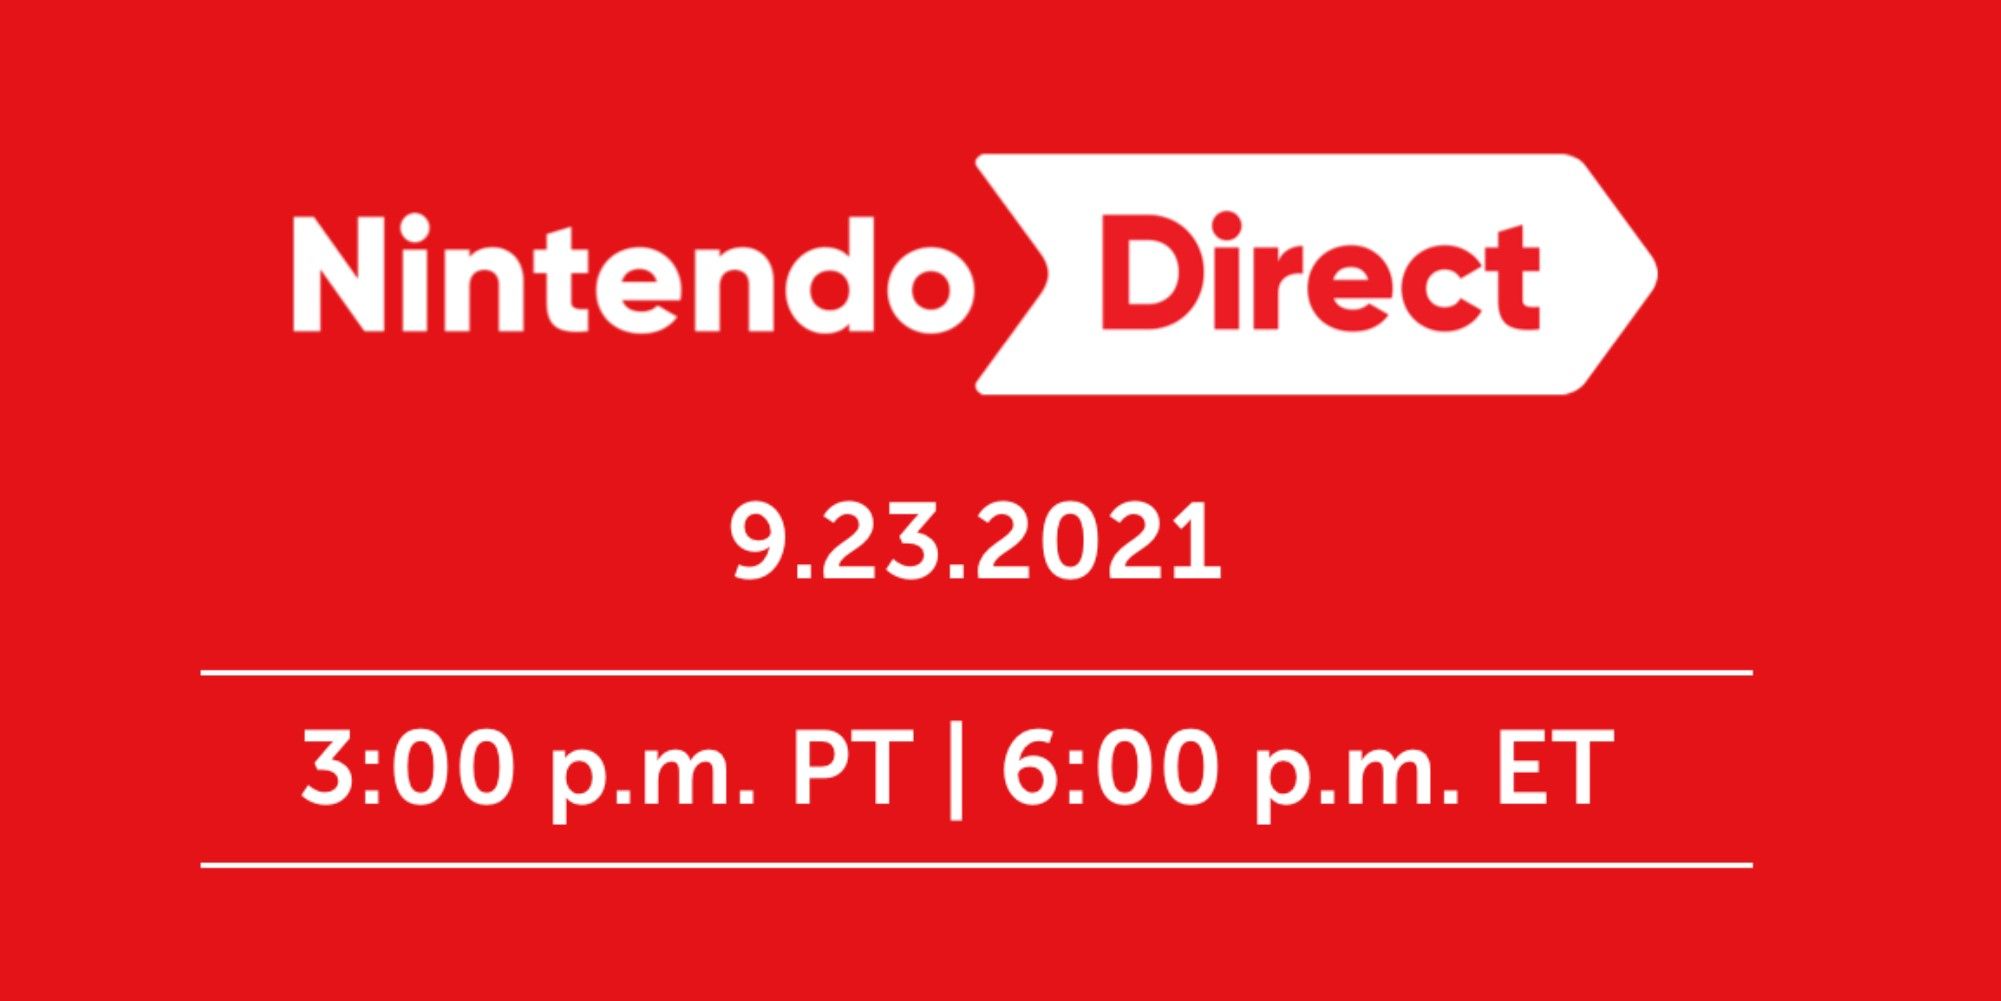 Nintendo Direct Announced For September 23, 40Minute Stream Focused On